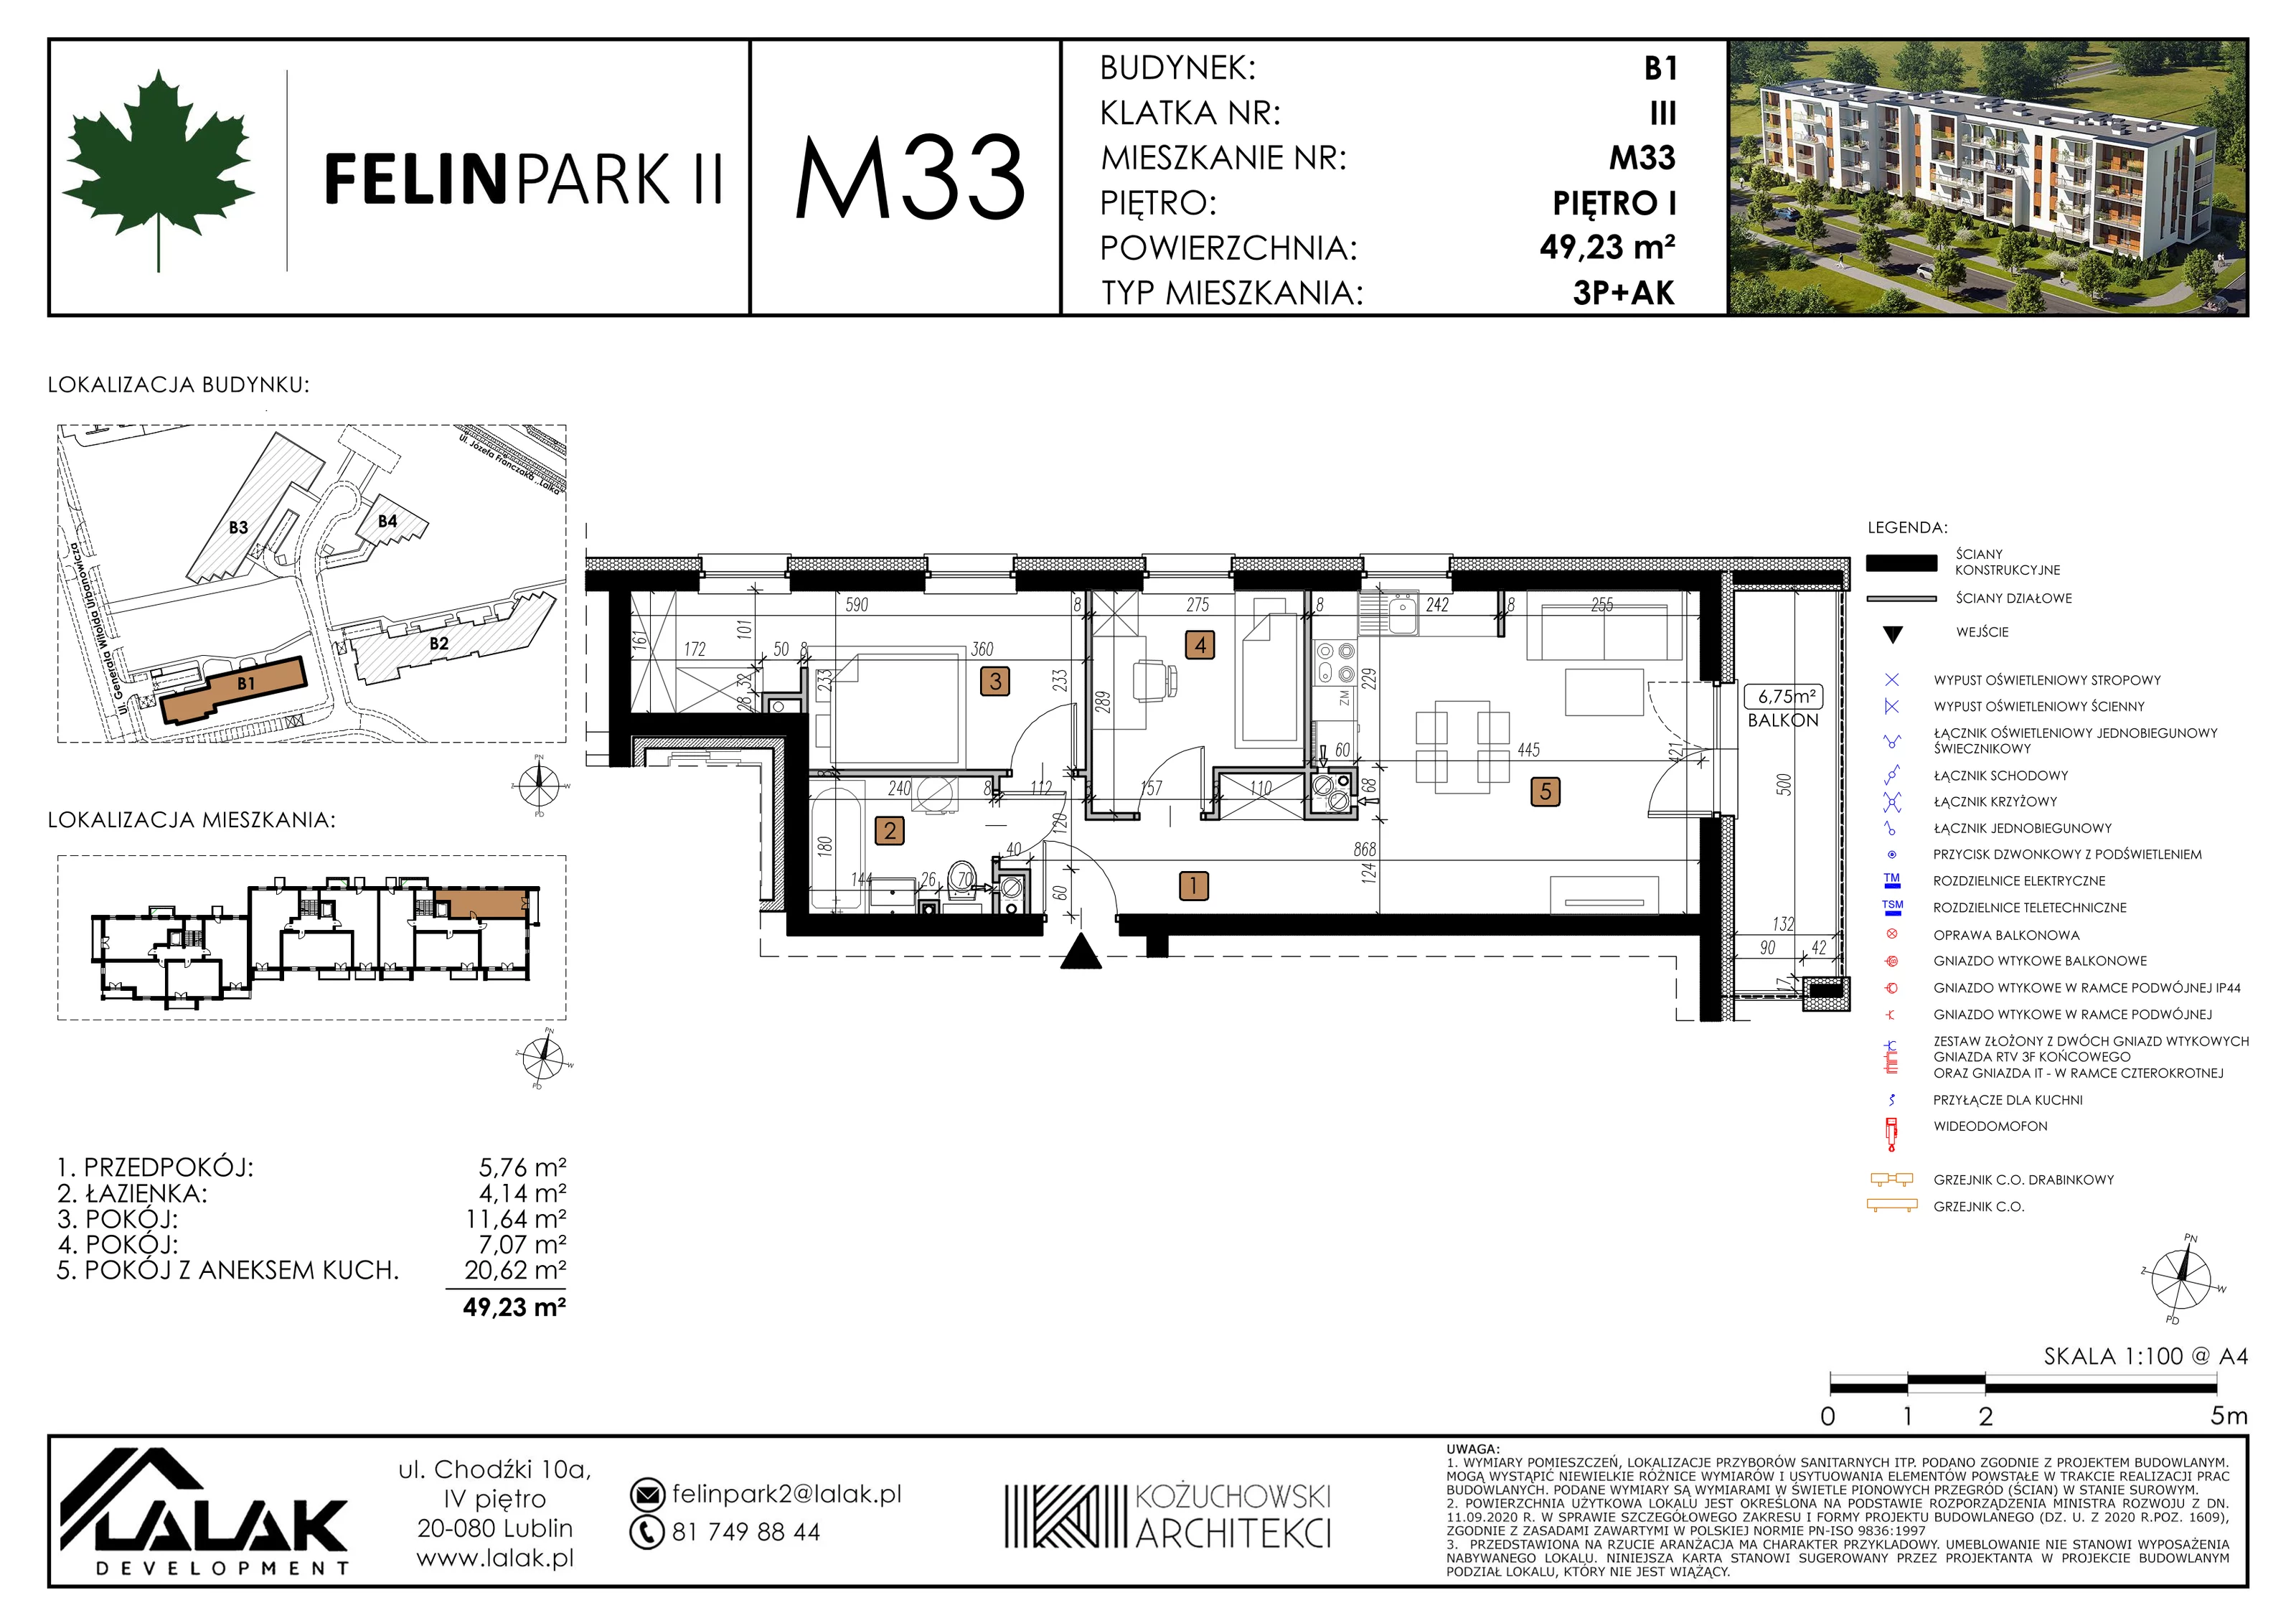 Mieszkanie 49,23 m², piętro 1, oferta nr B1_M33/I, Felin Park II, Lublin, Felin, ul. gen. Stanisława Skalskiego 8-10